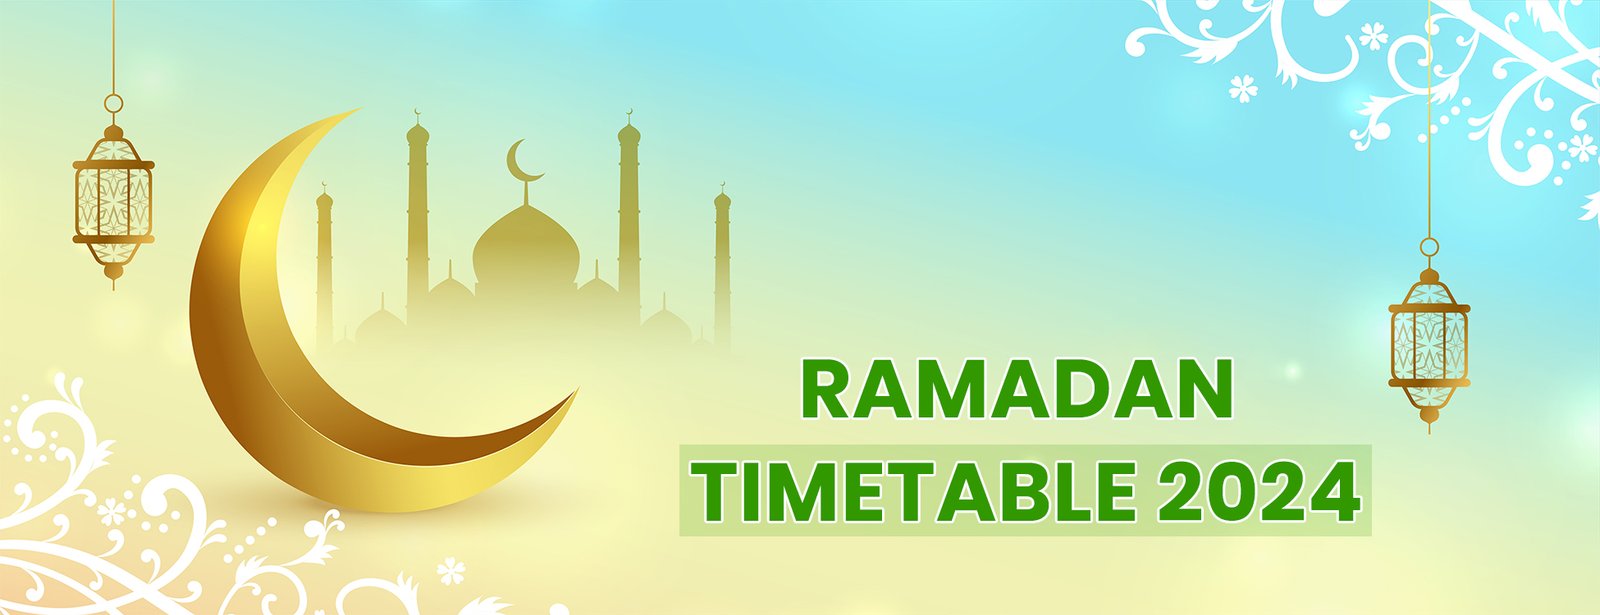 Ramadan Time Table UAE 2024, Ramadan 2024 Calendar